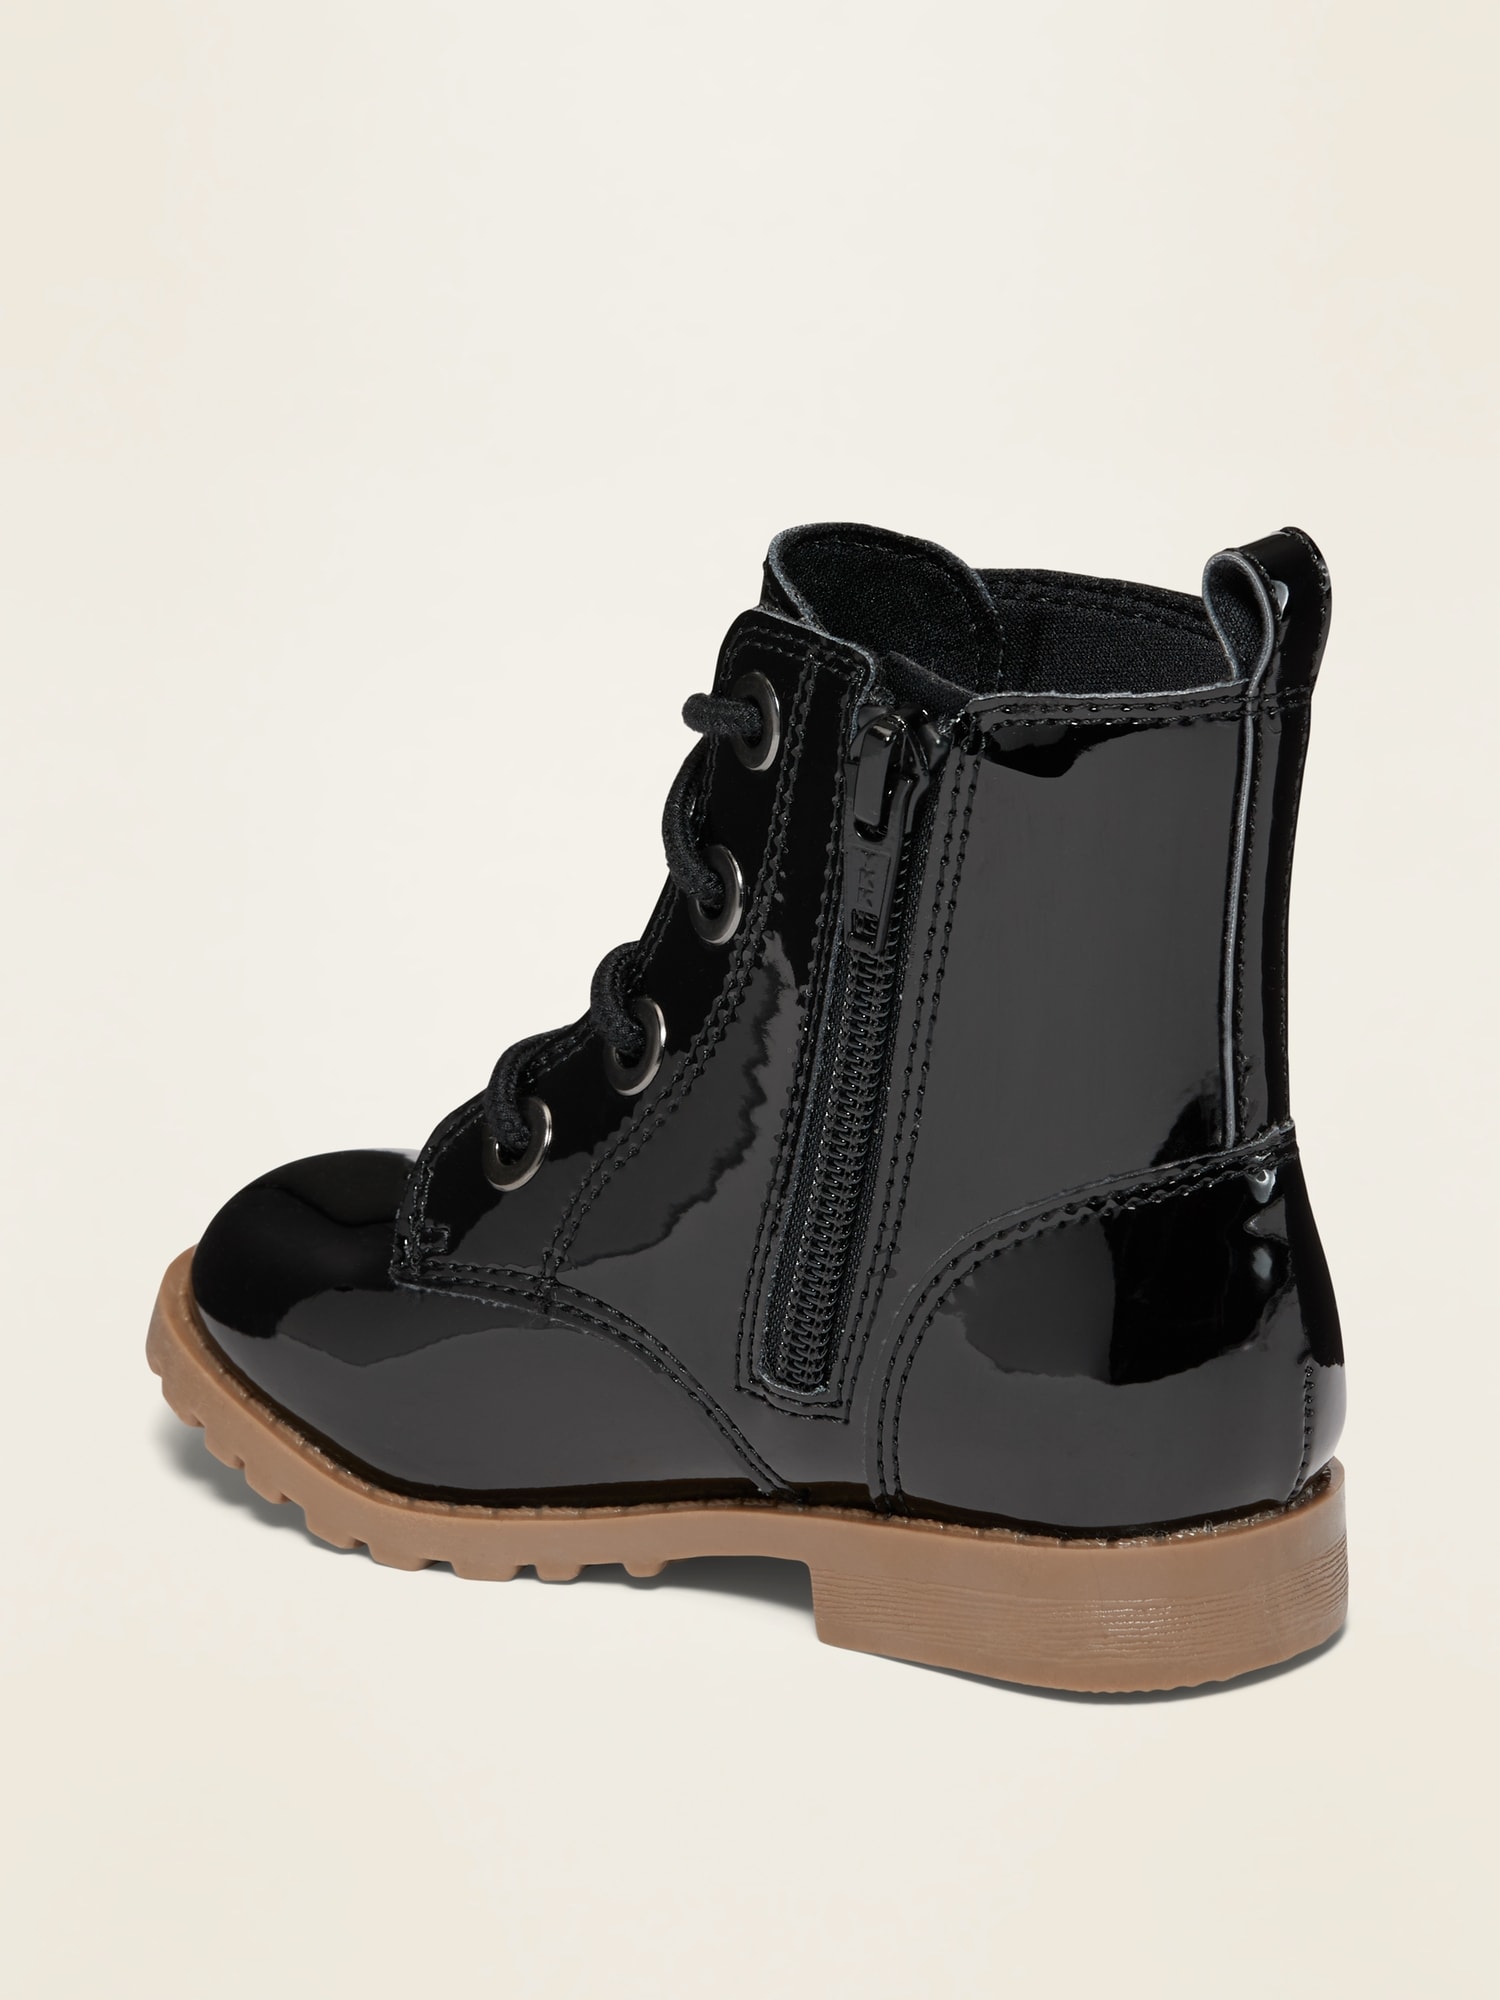 black shiny military boots